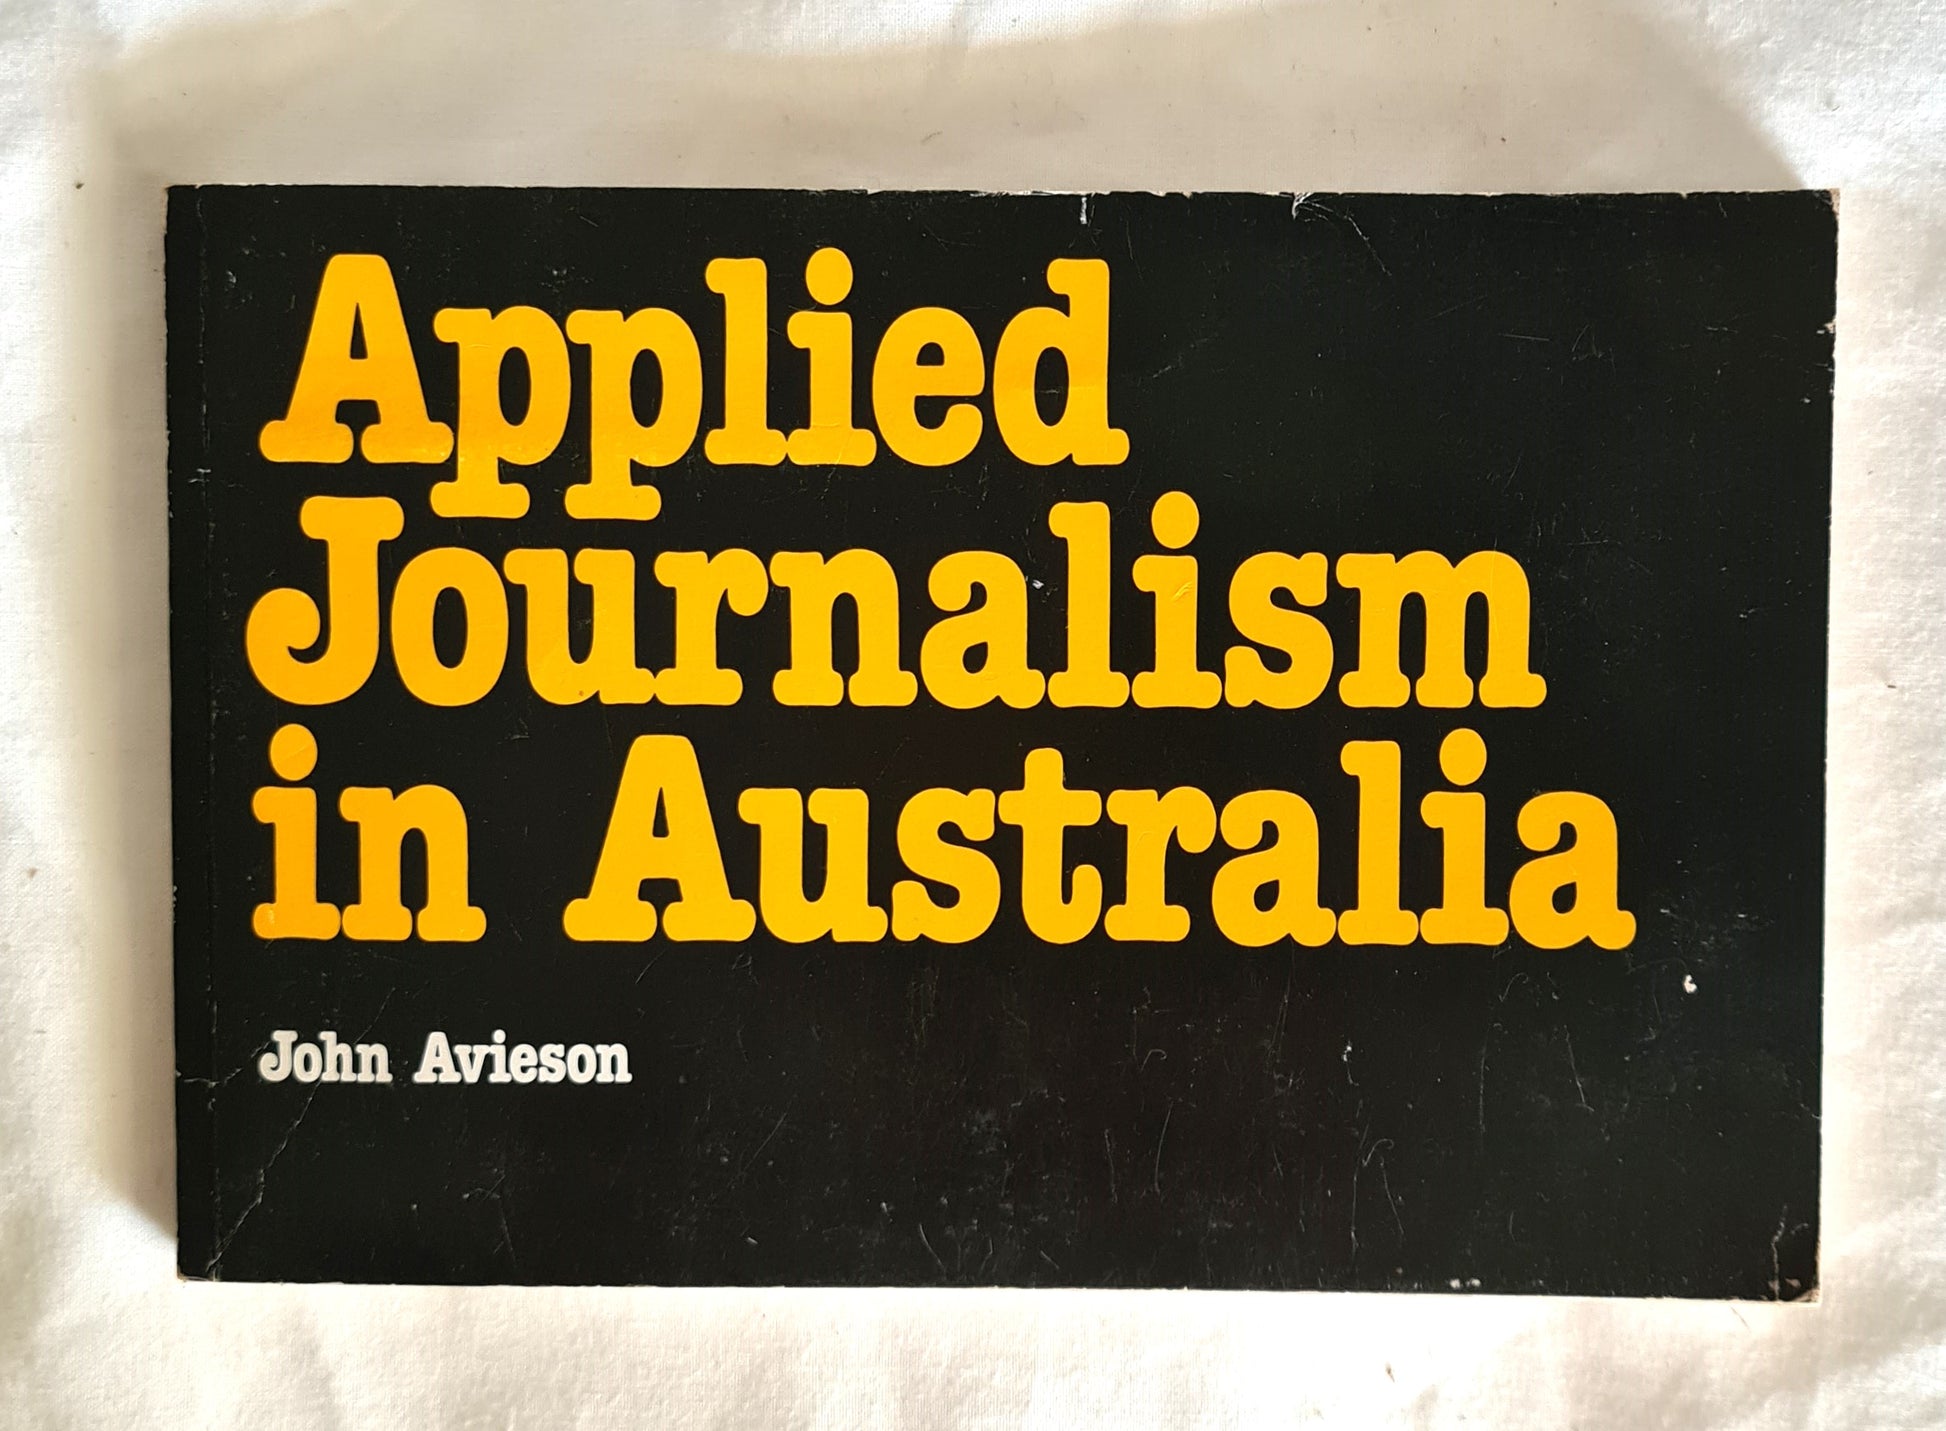 Applied Journalism in Australia by John Avieson